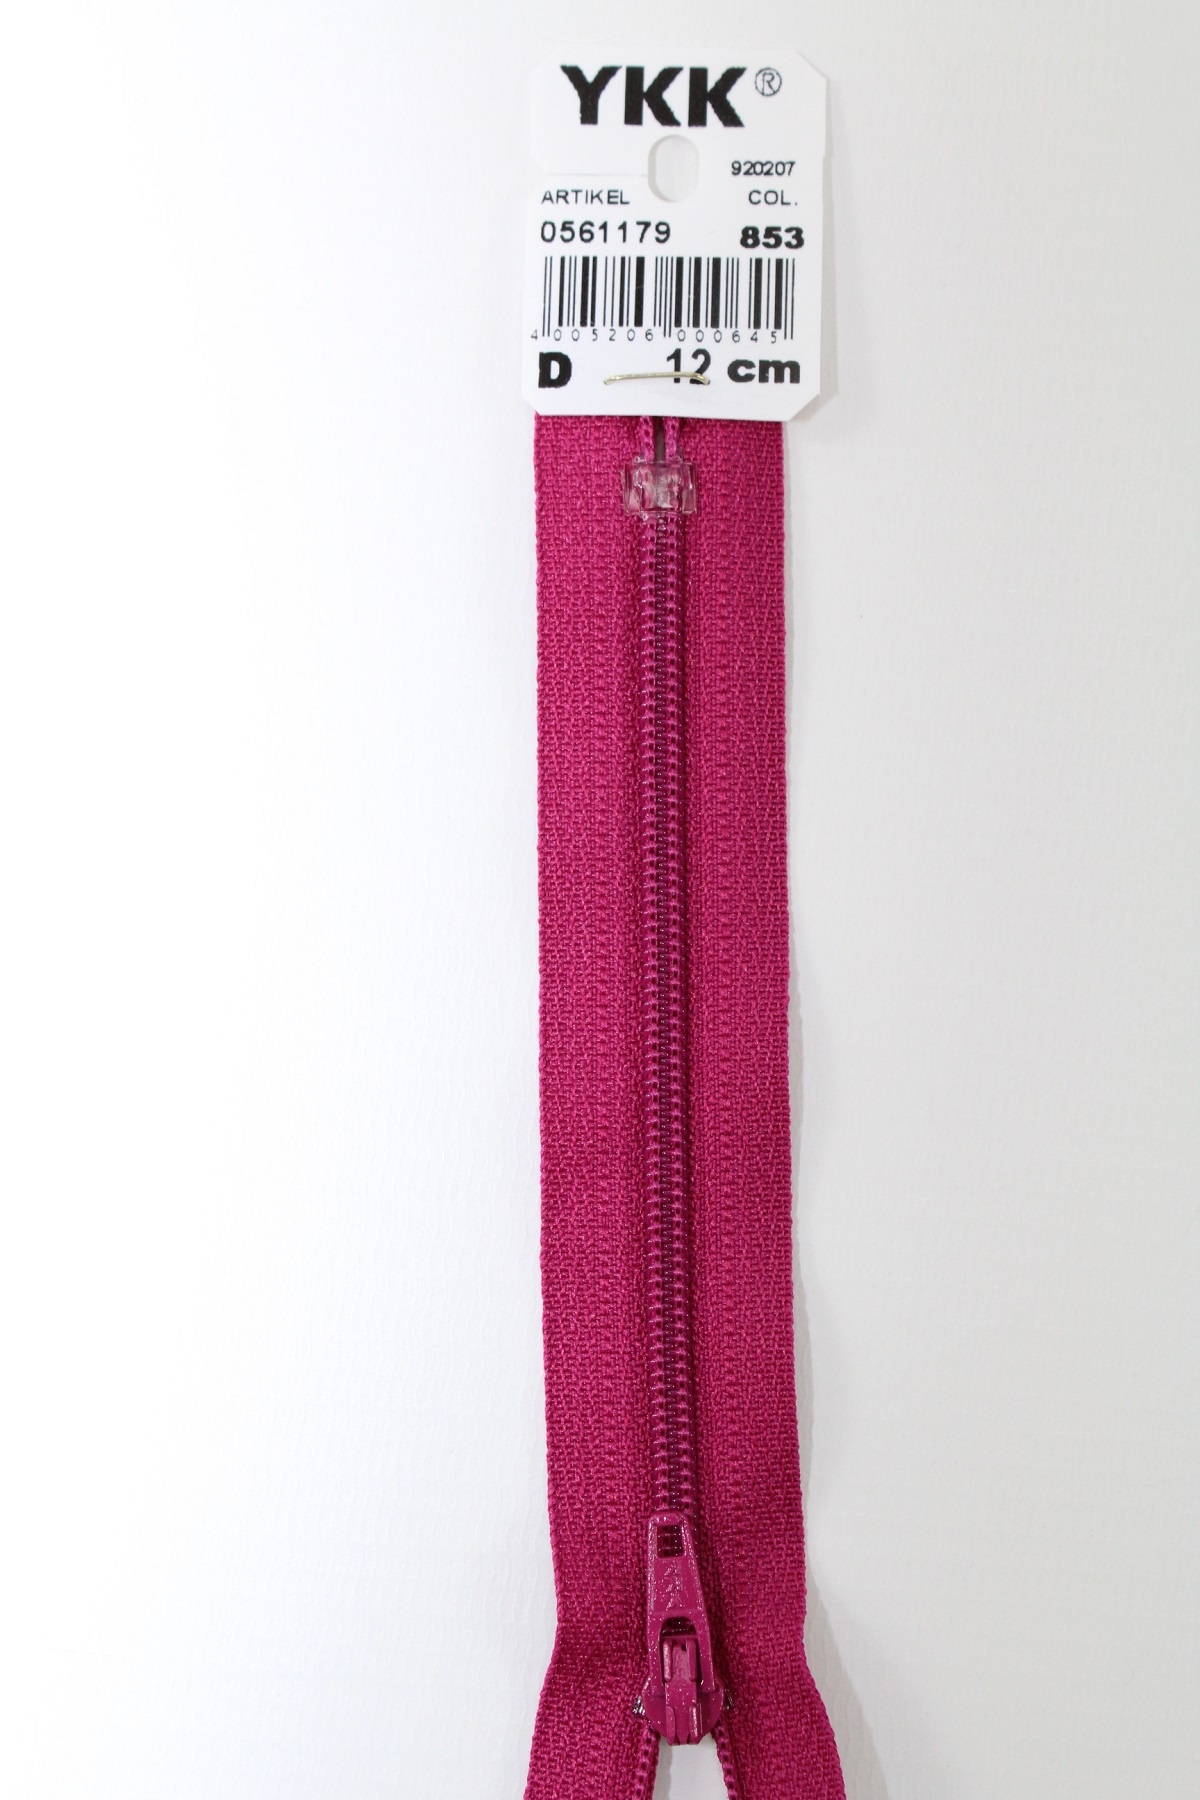 YKK-Reissverschluss 12cm-60cm, nicht teilbar, bordeauxviolett